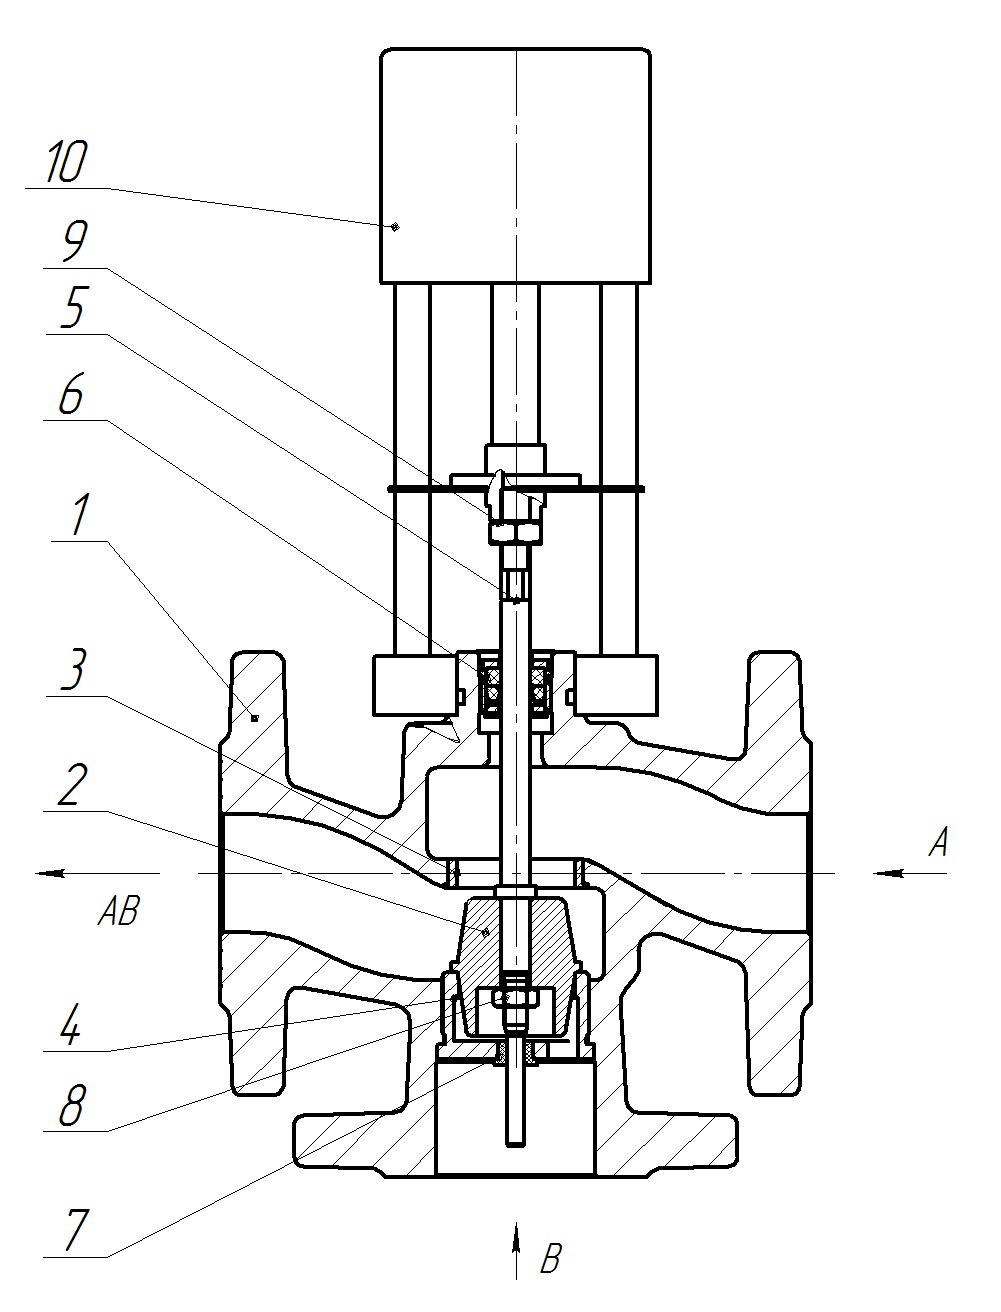 Клапан регулирующий трехходовой разделительный DN.ru 23ч901нж Ду80 Ру16 Kvs40 серый чугун СЧ20, фланцевый, Tmax до 150°С с электроприводом Катрабел TW-3000-XD220